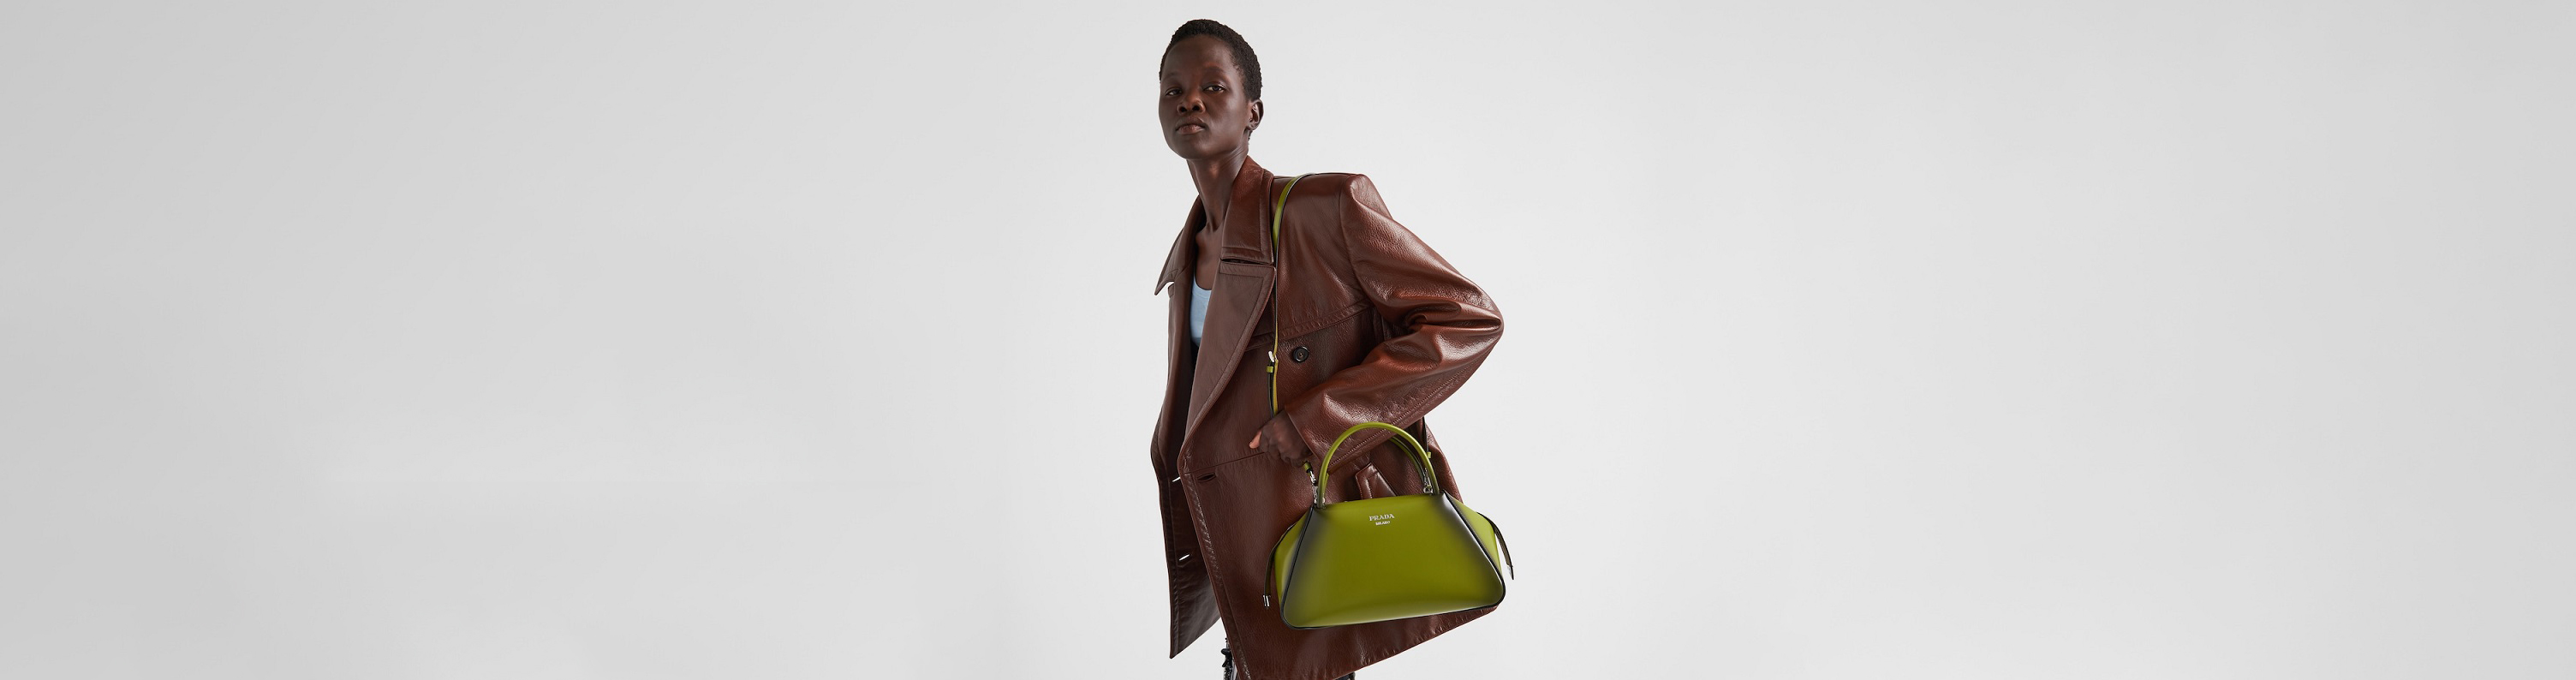 On the go with #Prada - Prada Galleria Bag - Ideas of Prada